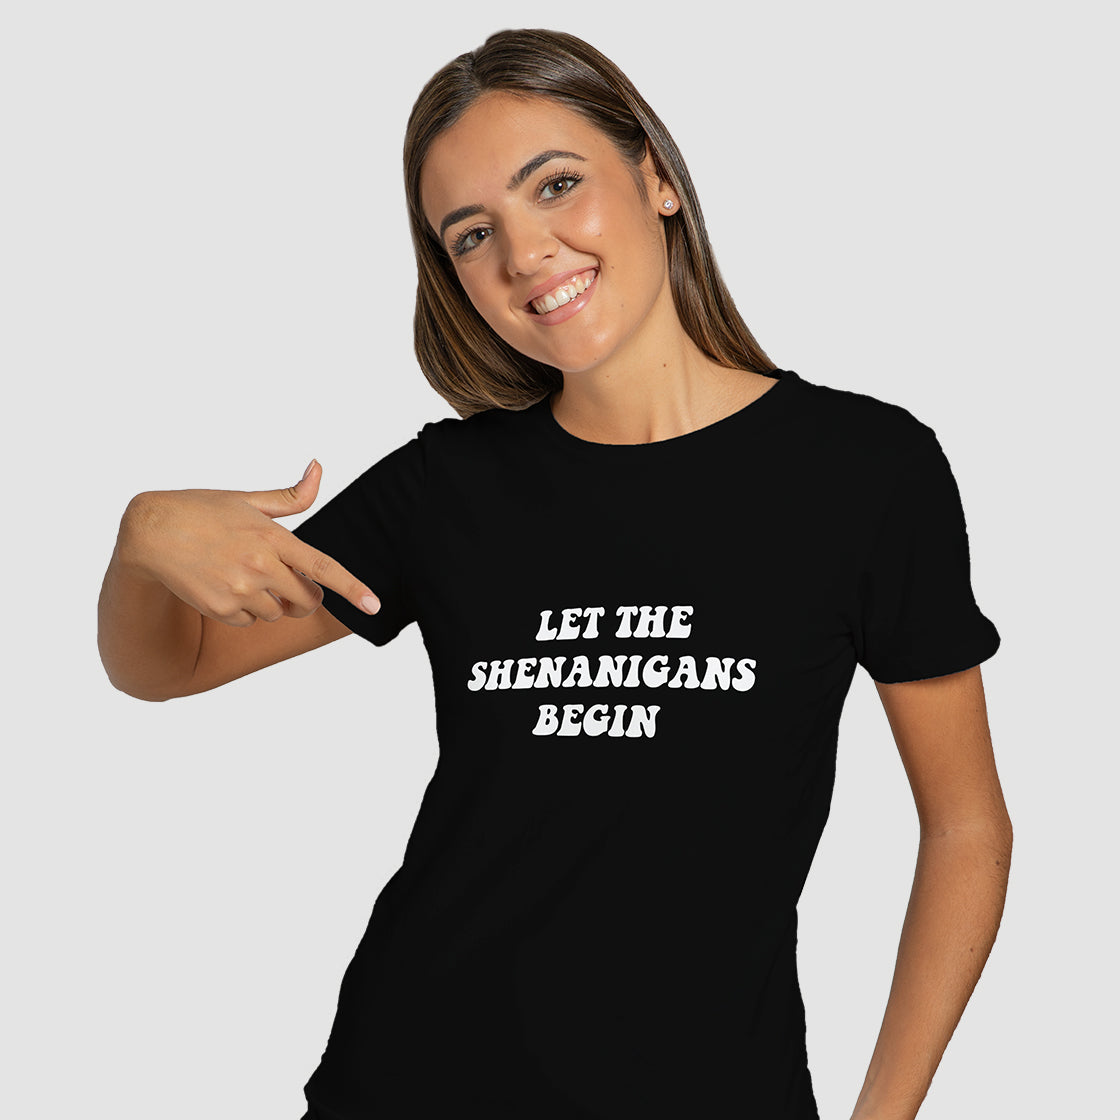 "Let the shenanigans begin" T-Shirt